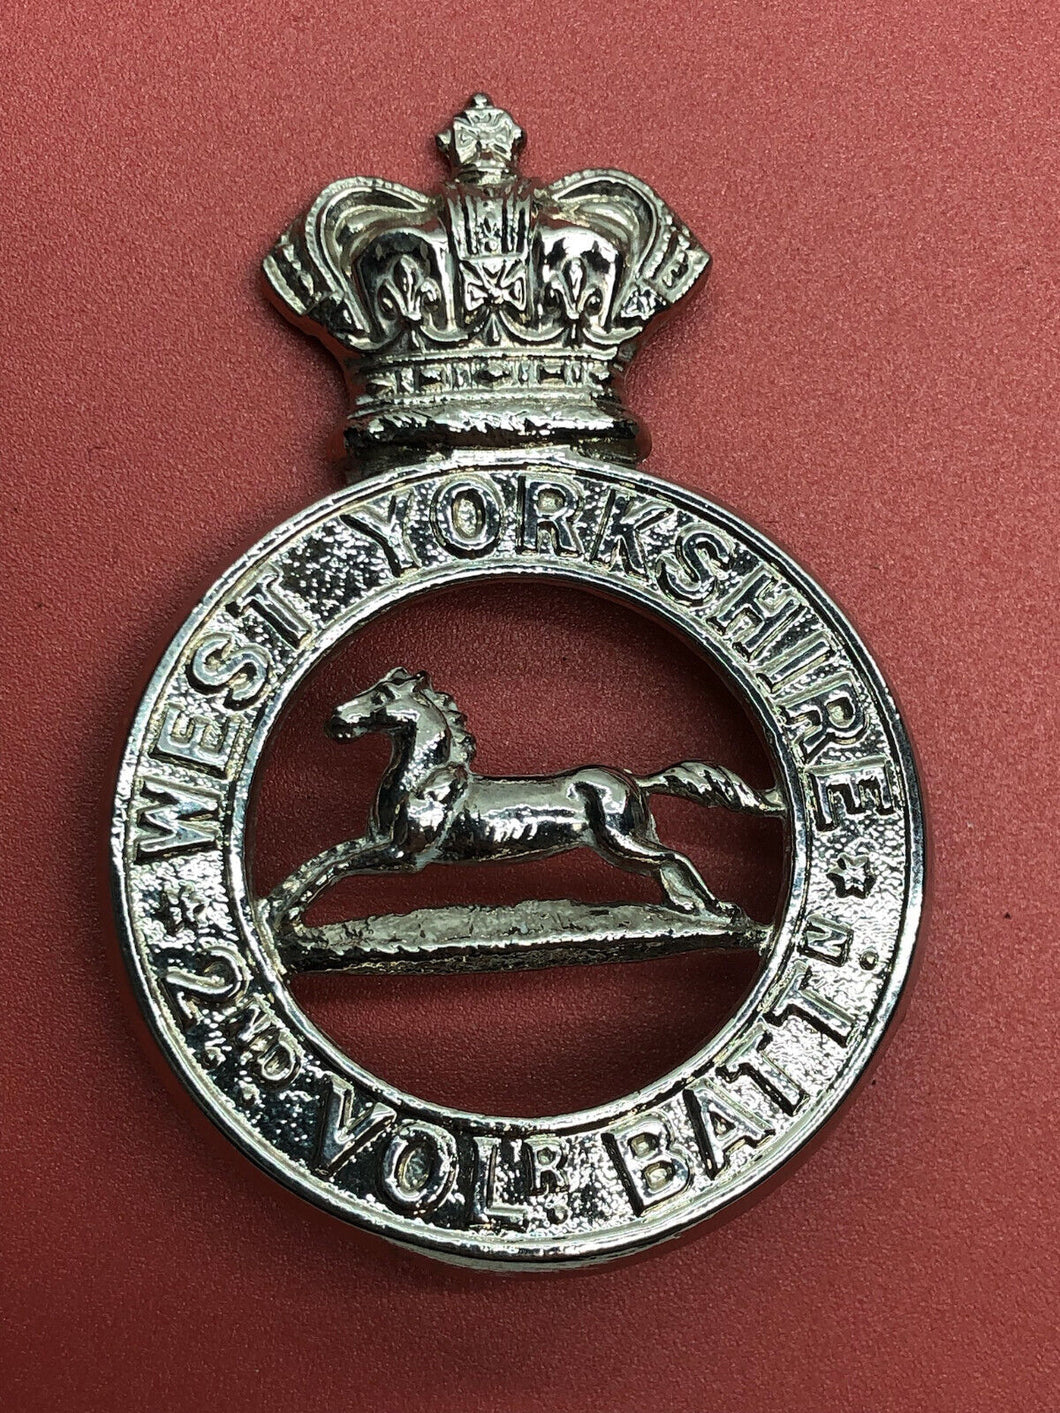 British Army Victorian Crown West Yorkshire 2nd Volunteer Battalion Cap Badge